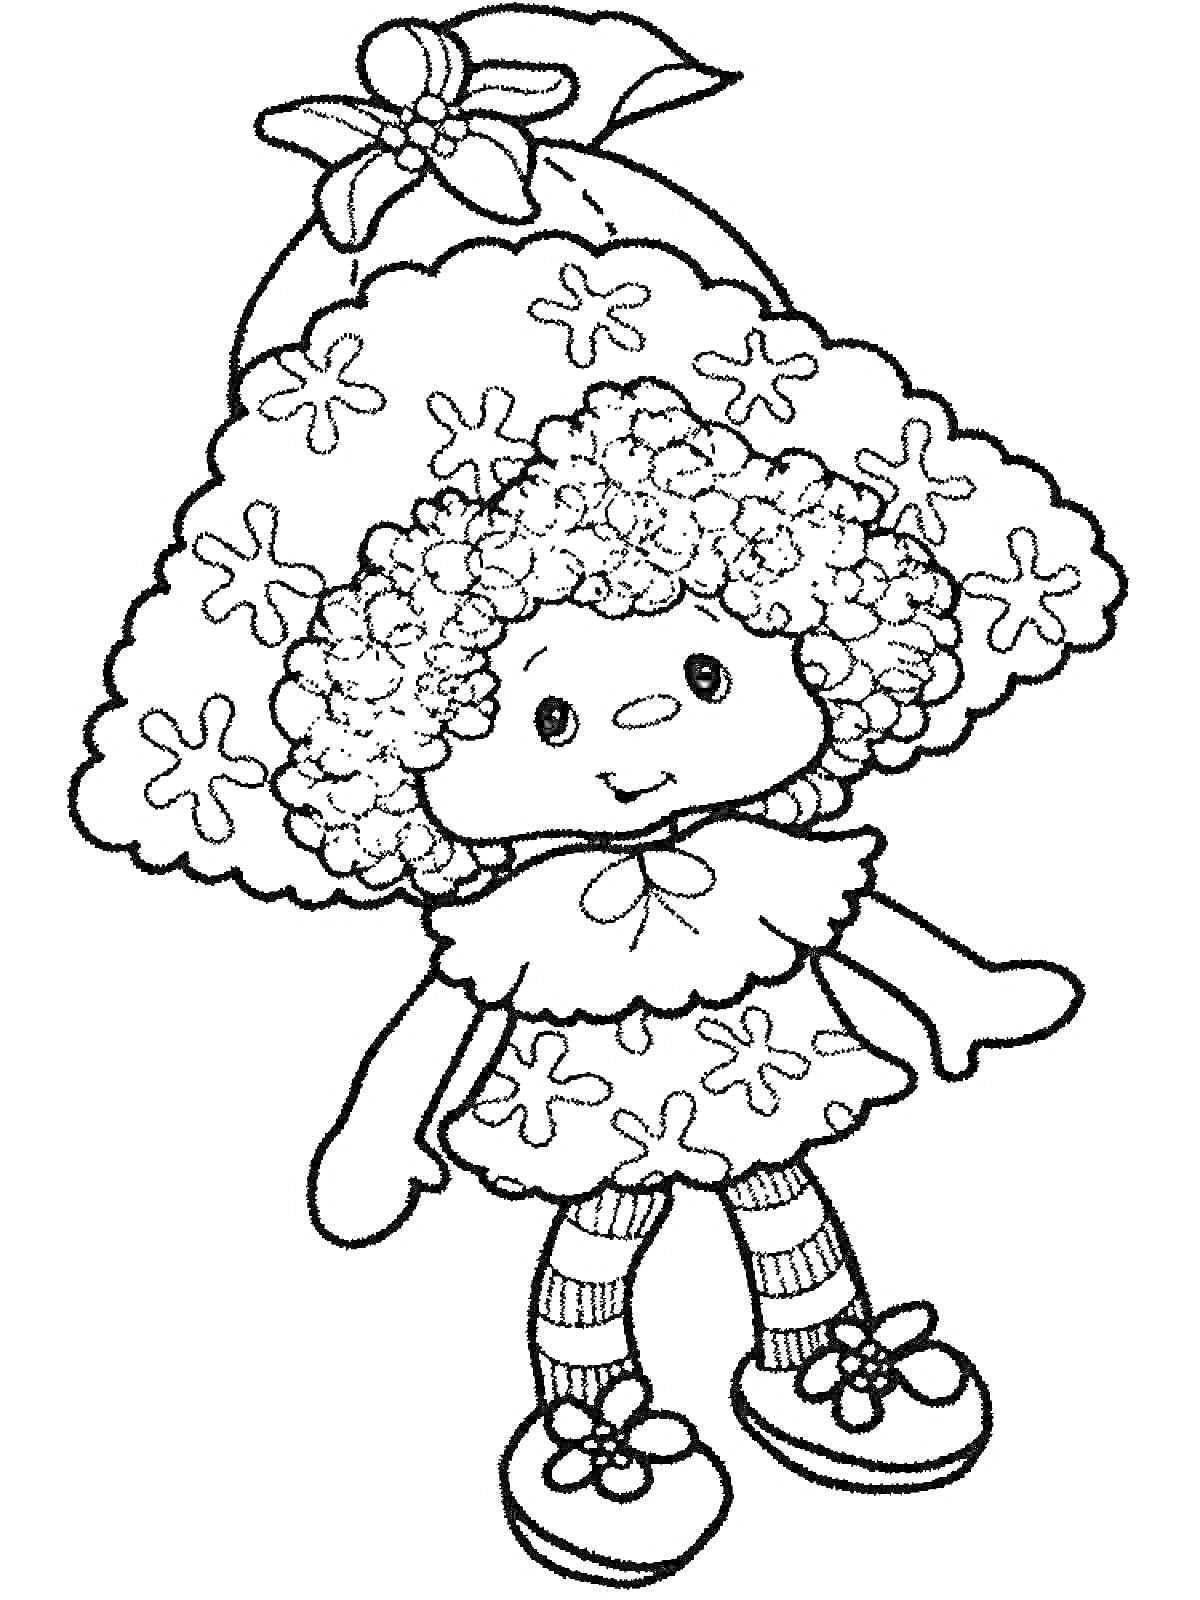 Раскраска Кукла в шляпе с бантиком, в платье с цветочным узором, с кудрявыми волосами, в колготках с полосками и туфельках с цветами